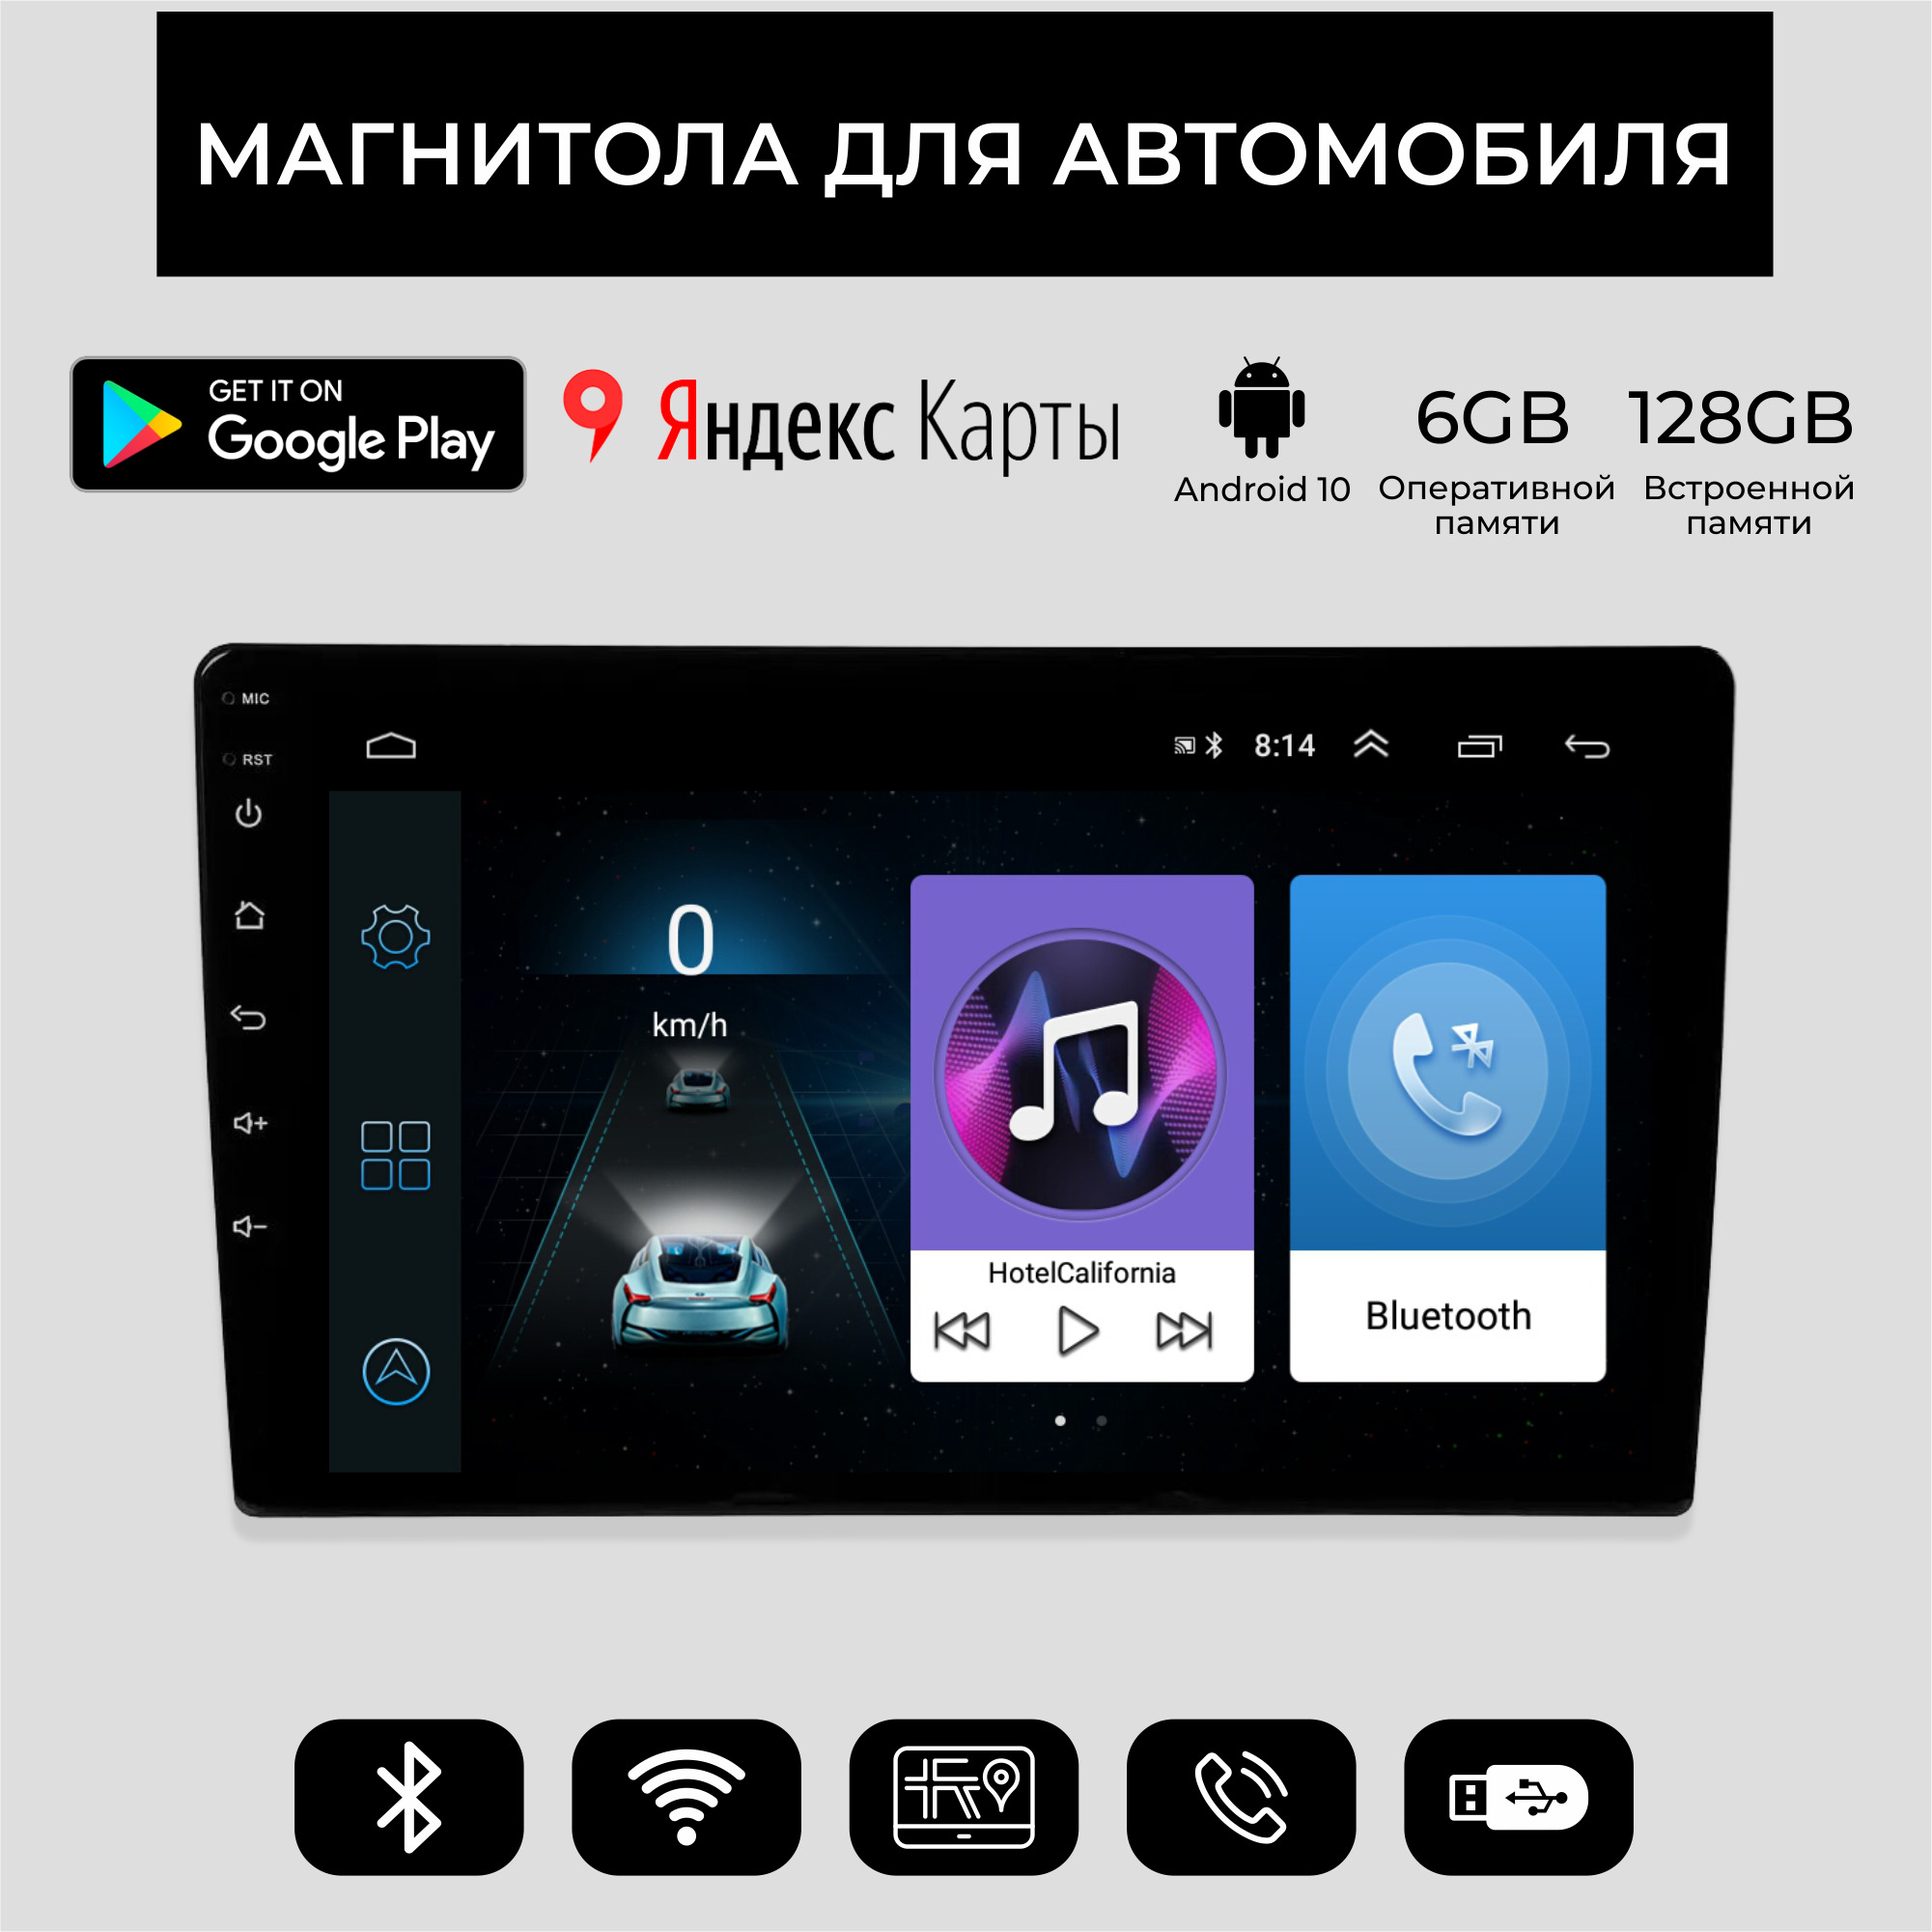 Универсальная автомагнитола 10 дюймов, Android 10, 6/128GB, планшет / Мультируль / ШГУ /